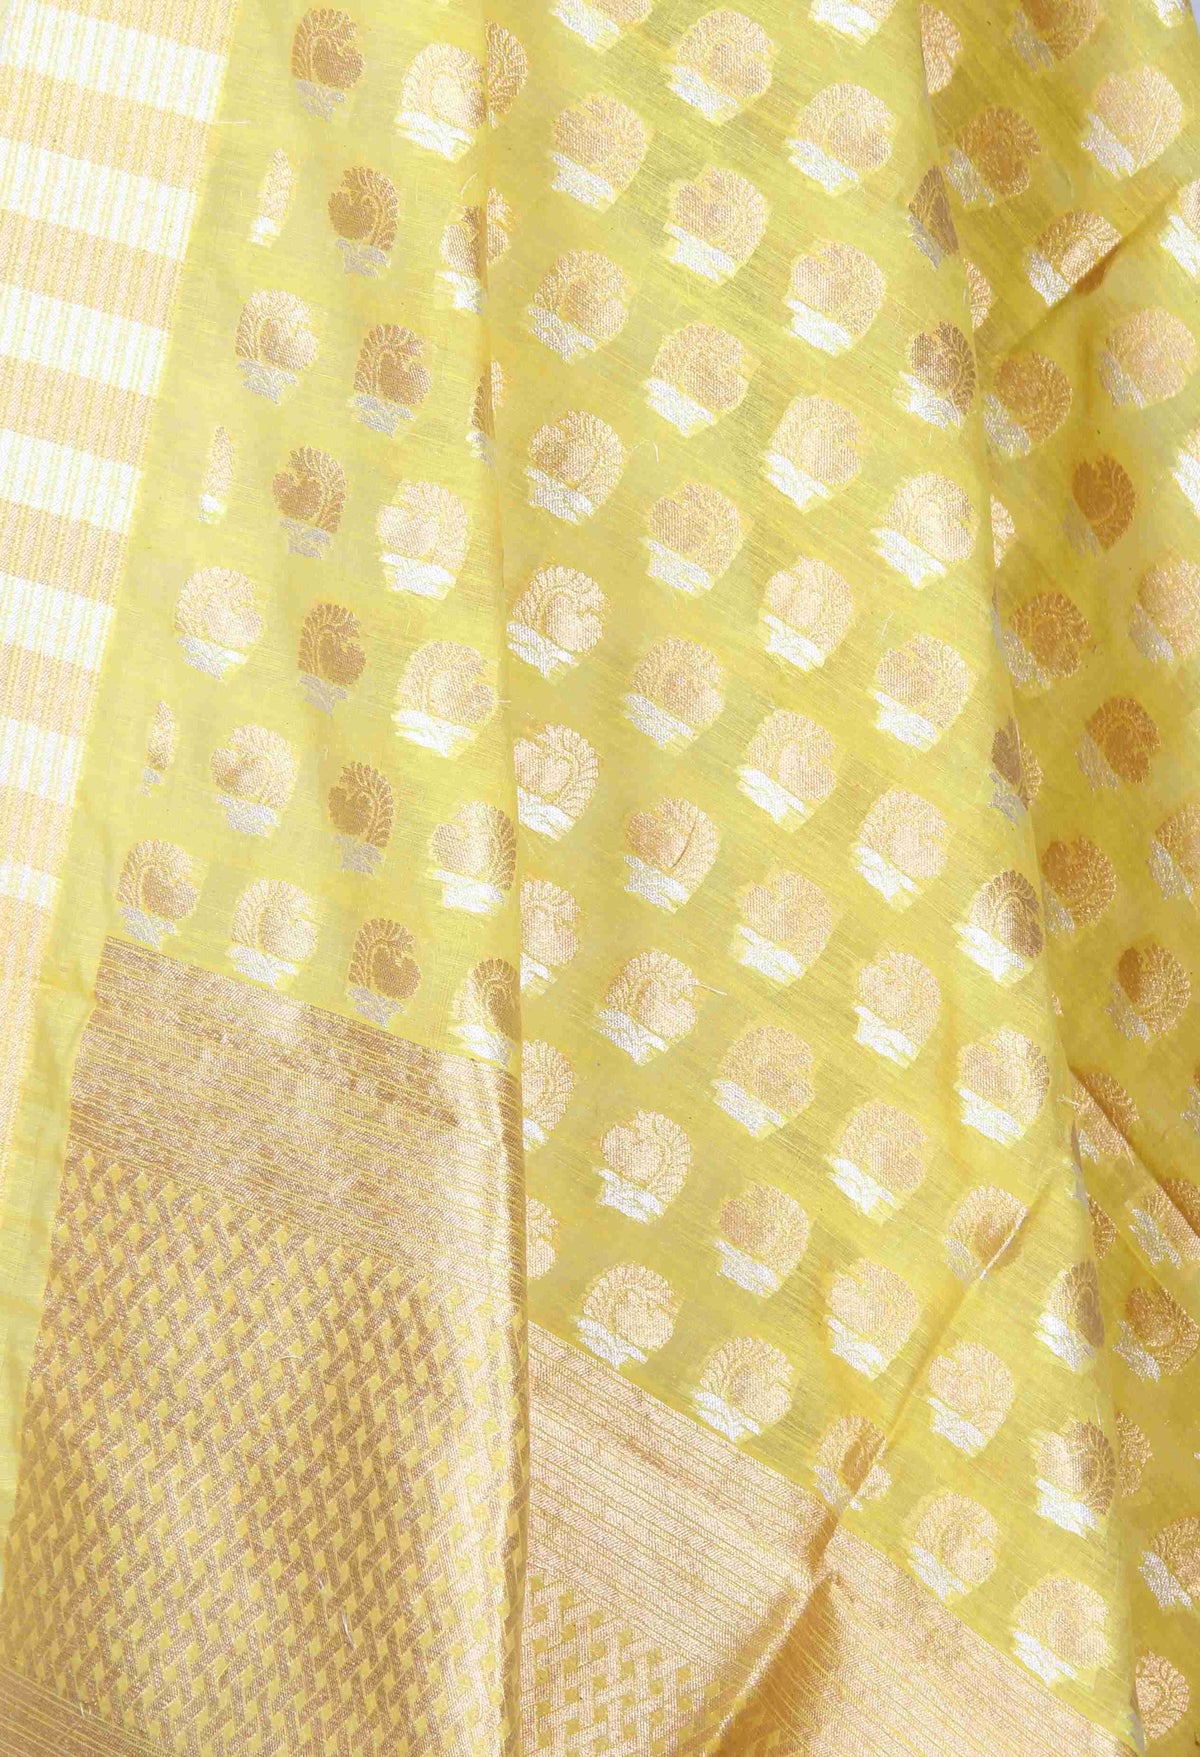 Yellow Silk Cotton Banarasi Dupatta with sona rupa stylized motifs (2) Close up